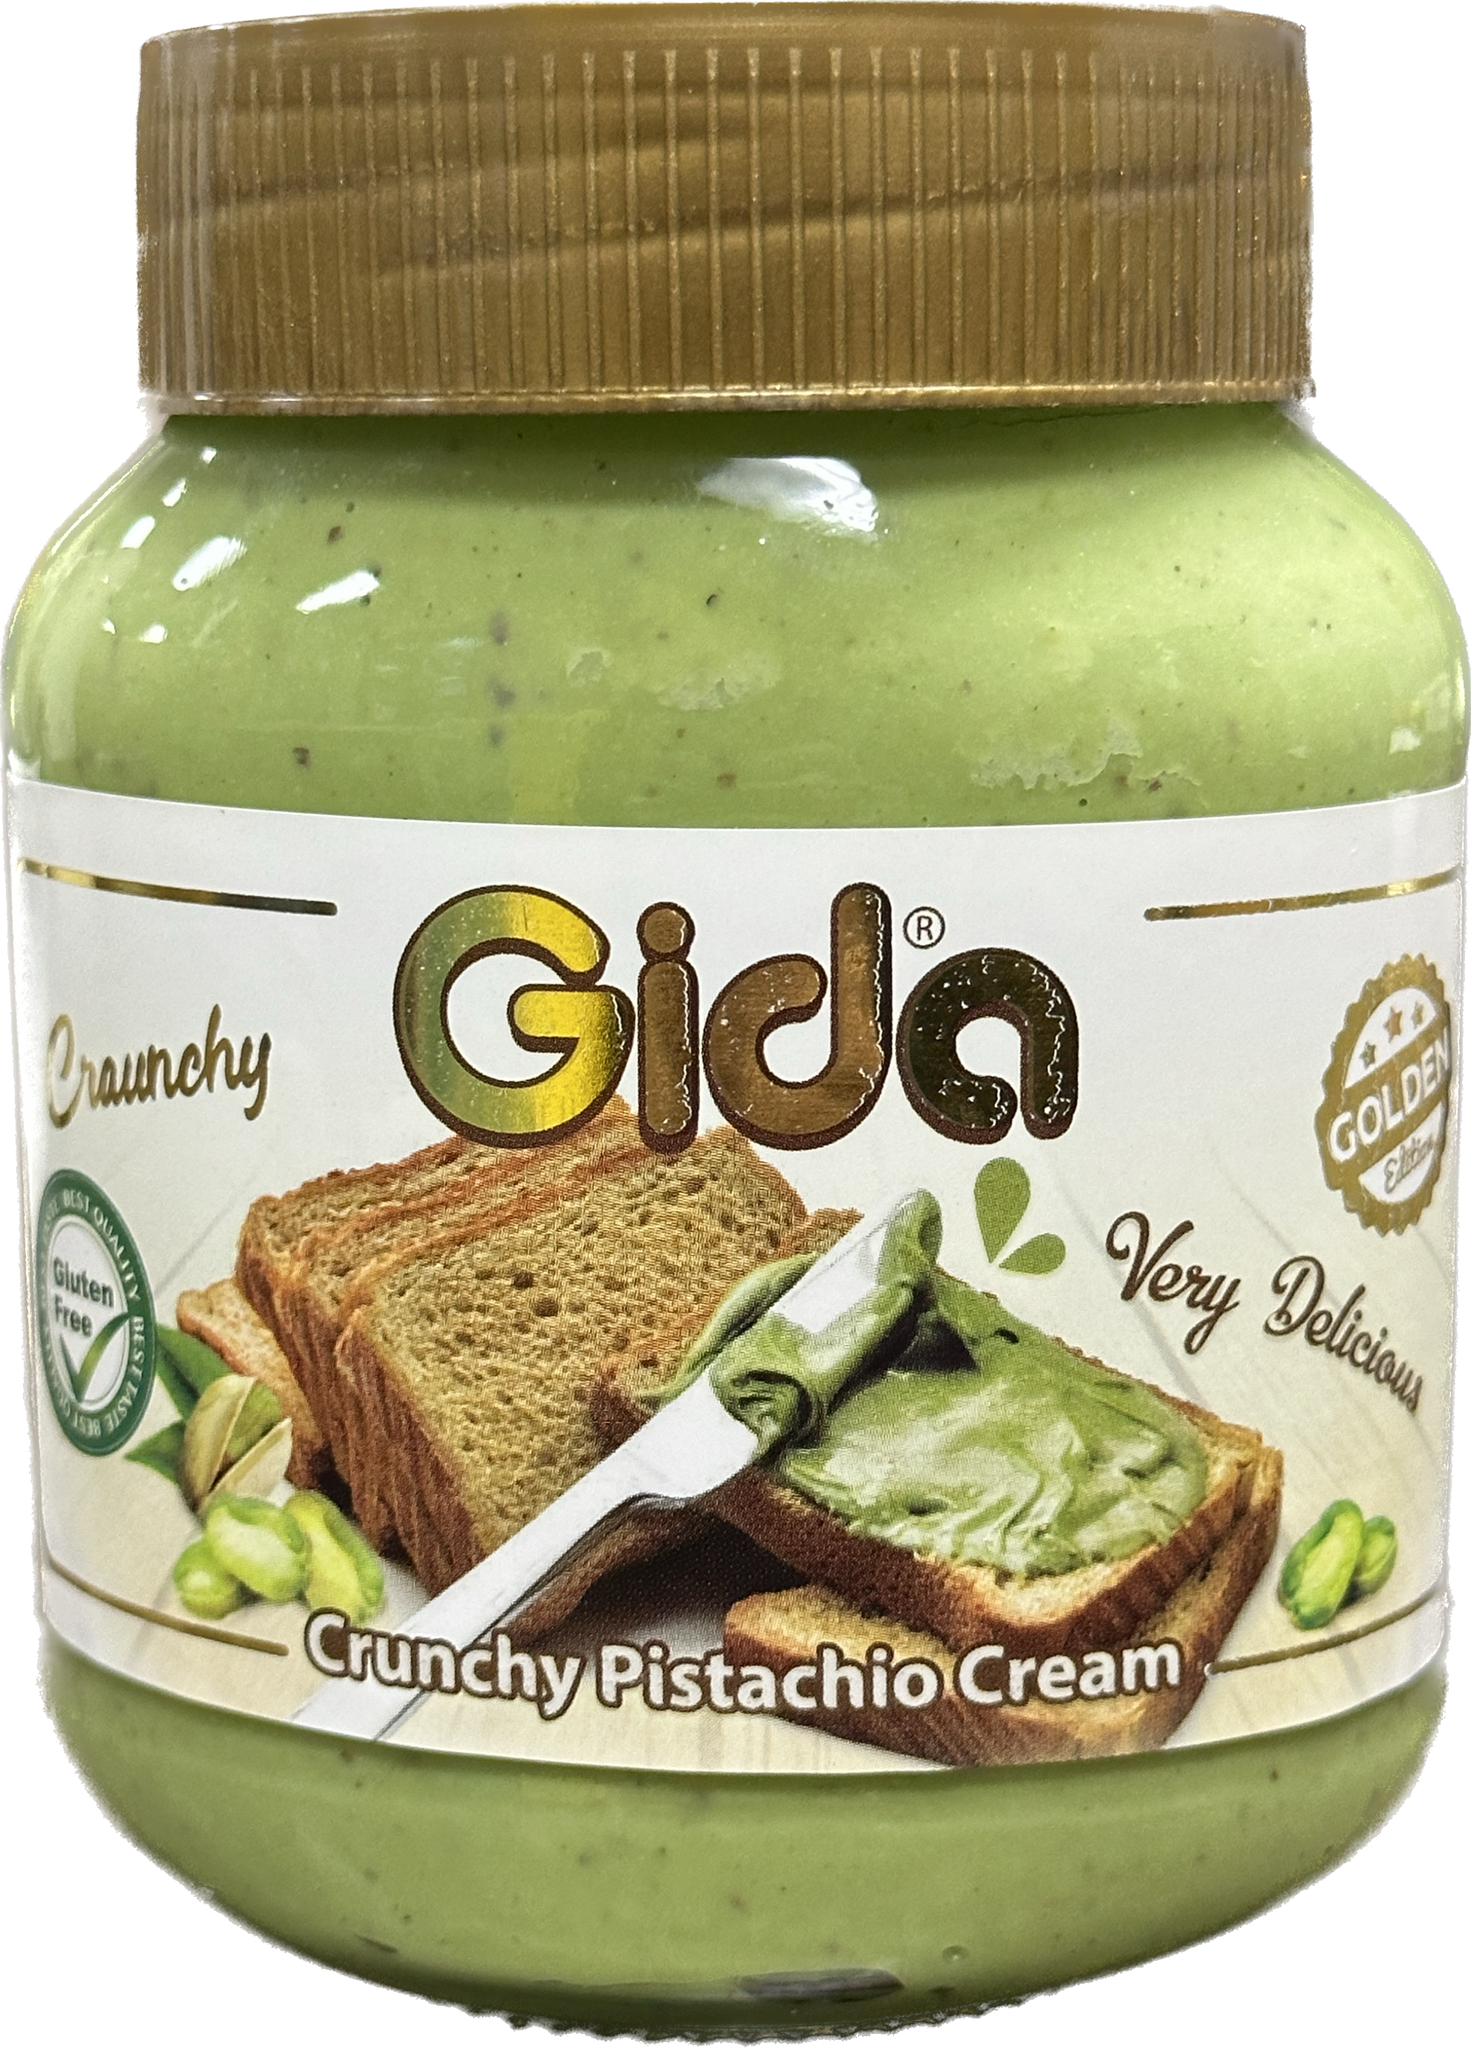 Crunchy Turkish Pistachio Cream (330g) by Gida